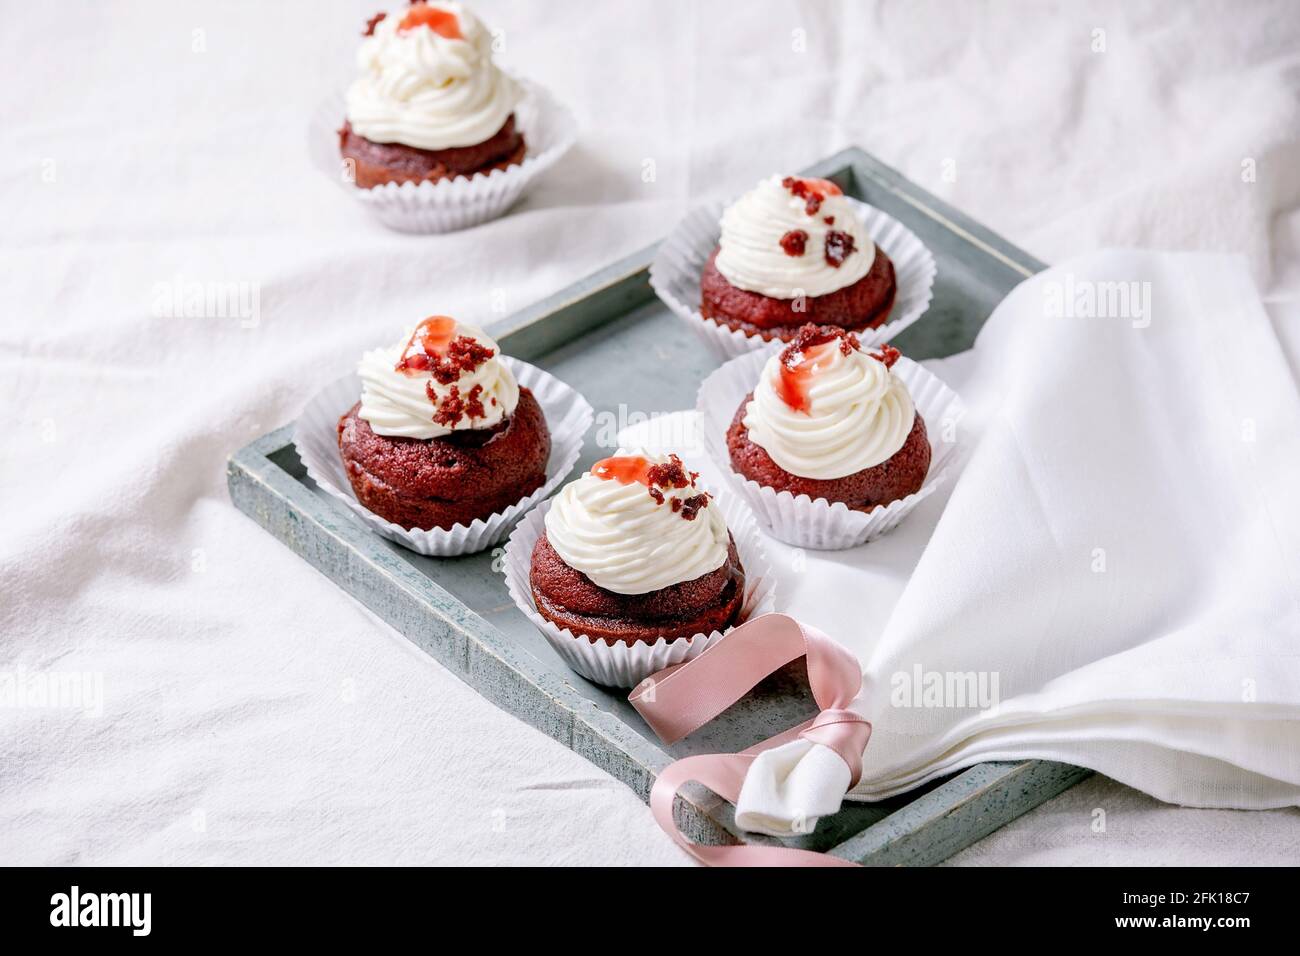 Petits gâteaux faits maison en velours rouge avec crème fouettée sur plateau en bois, serviette blanche avec ruban sur nappe blanche. Banque D'Images